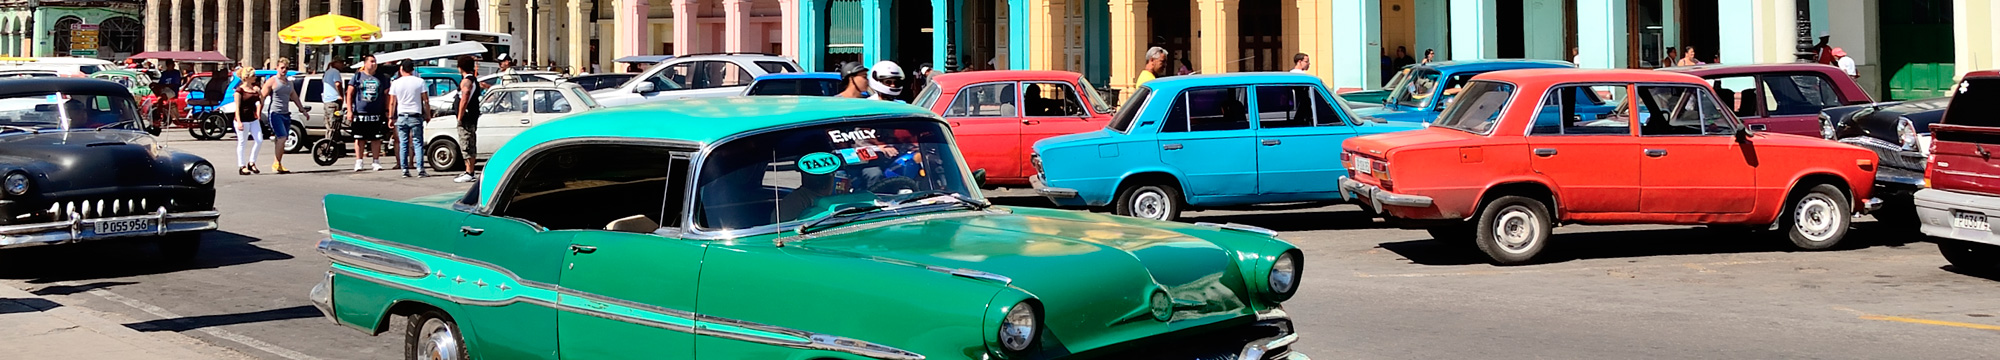 Cuba: La Habana y Varadero